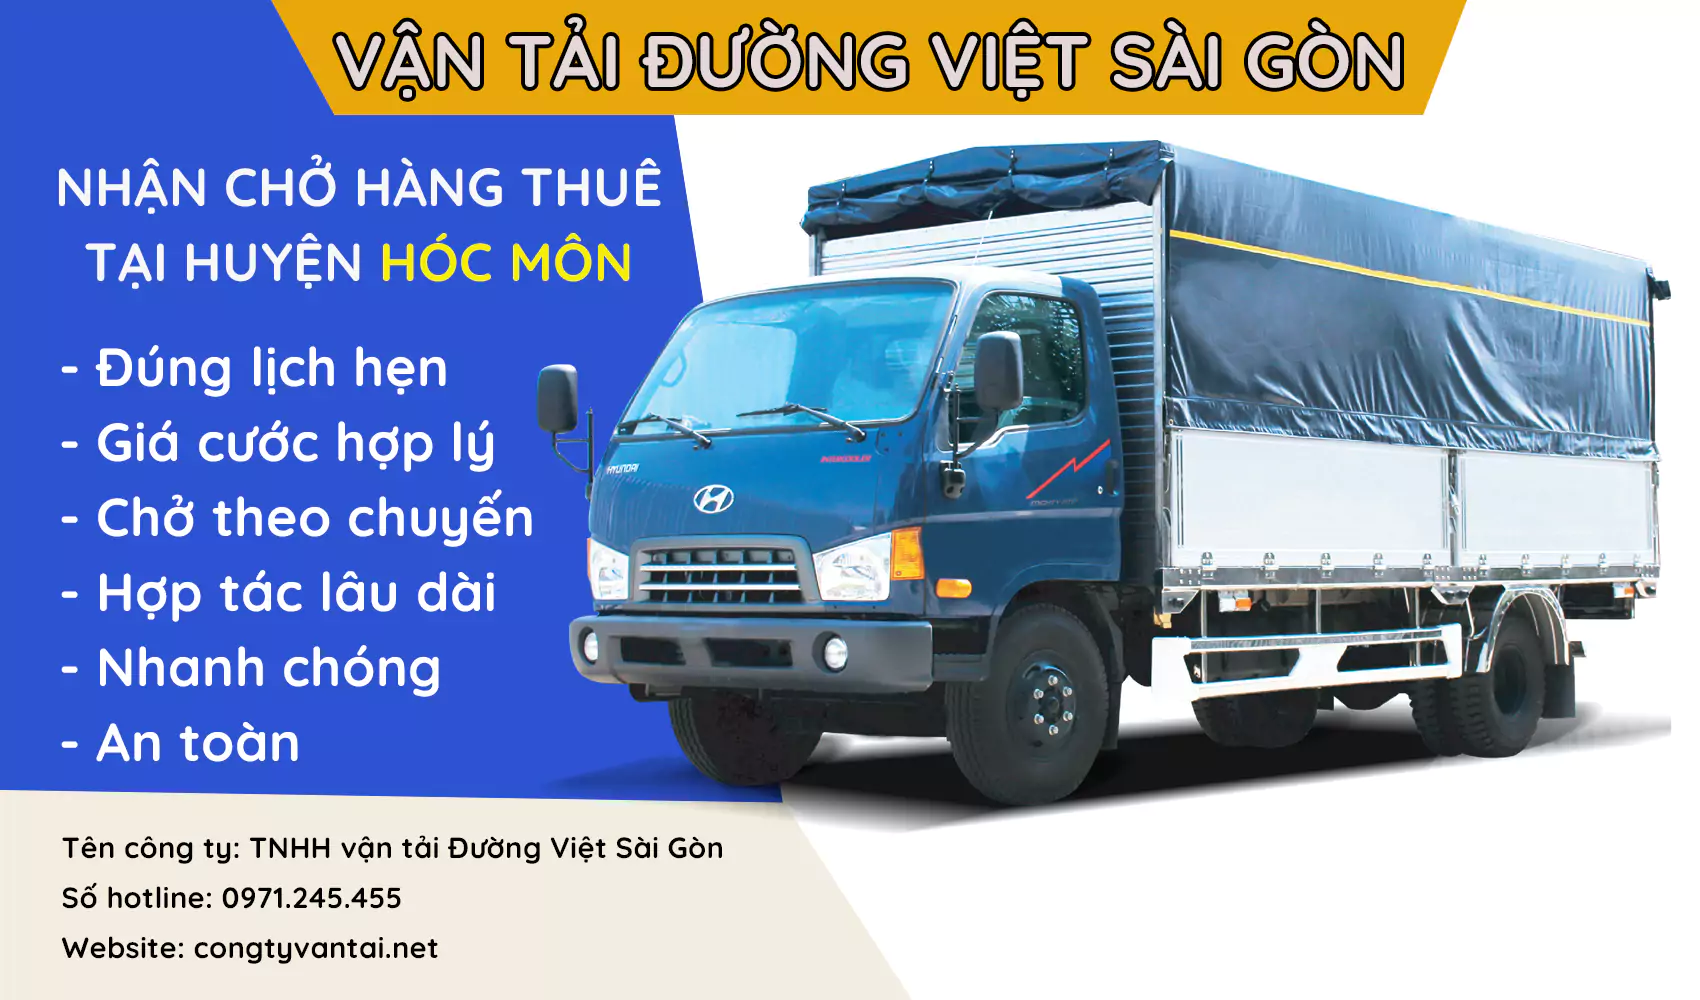 Dịch vụ xe tải nhận chở hàng thuê giá rẻ tại Huyện Hóc Môn